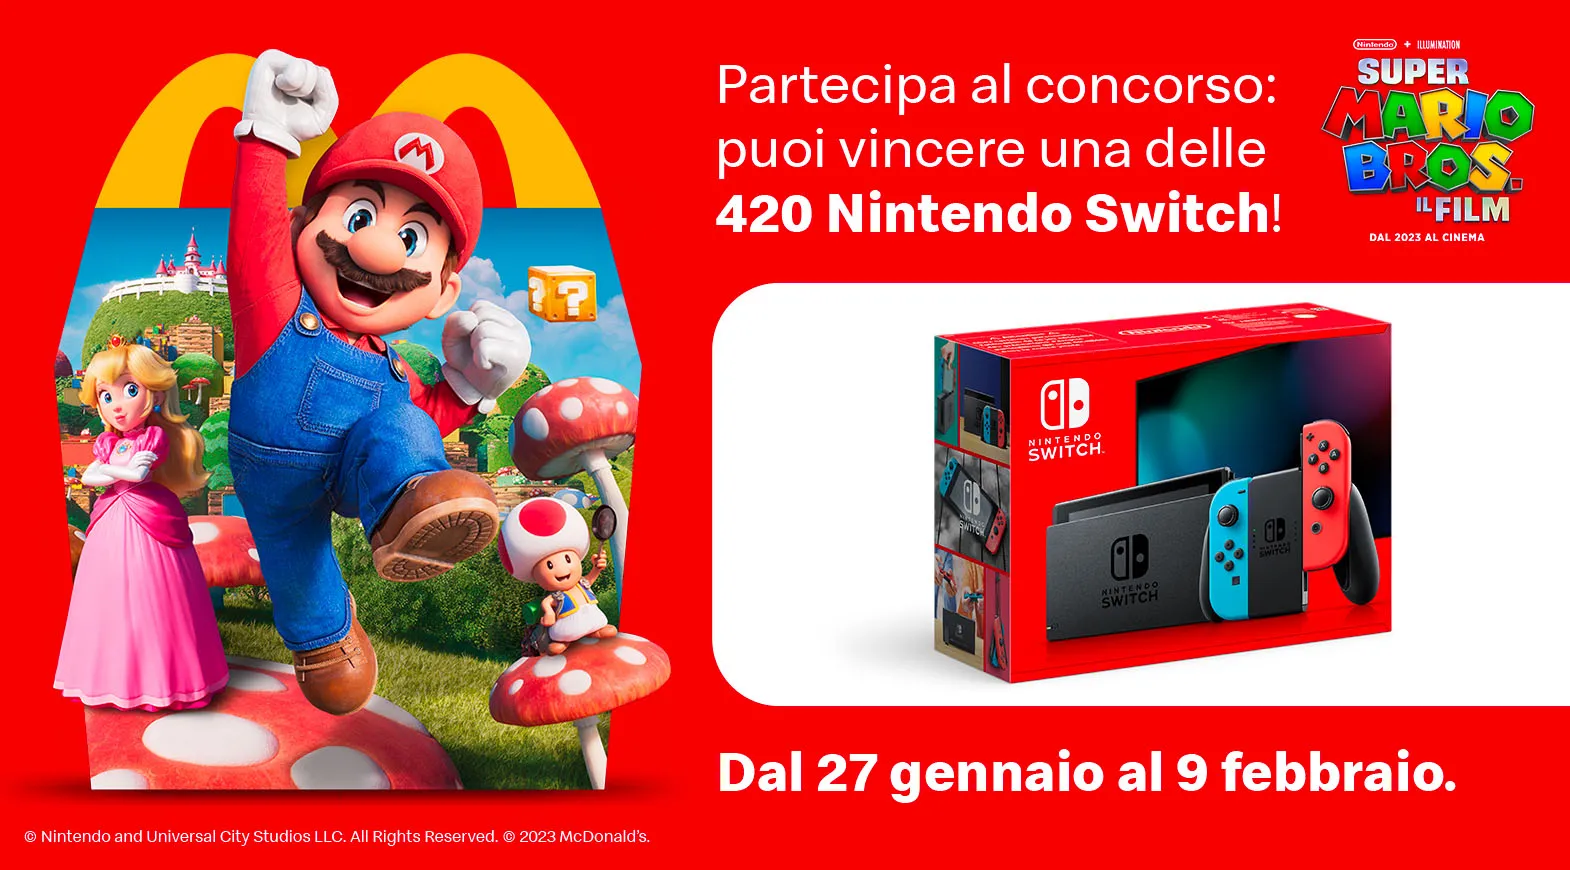 Partecipa al concorso: puoi vincere una delle 420 Nintendo Switch!